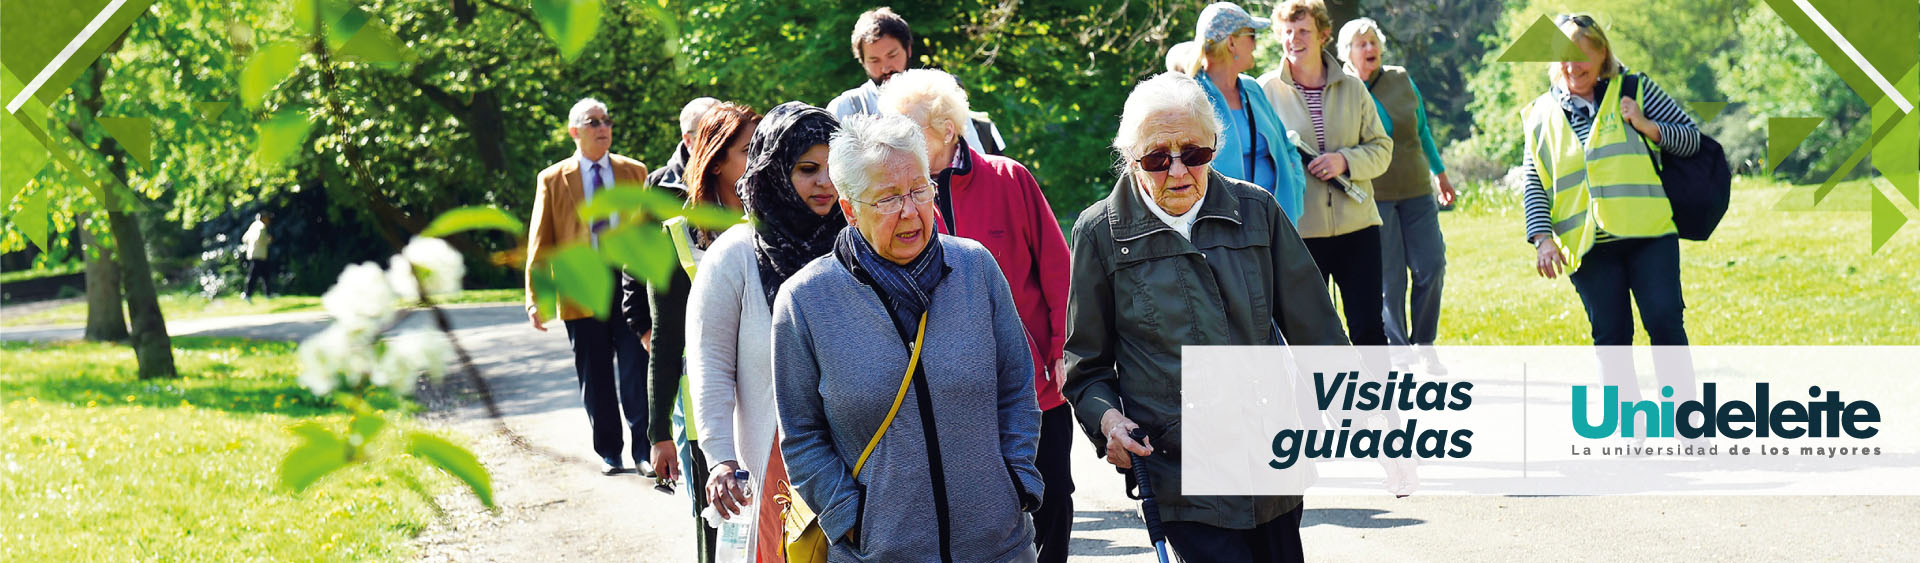 Fotografía de cabecera para la sección visitas guiadas de Unideleite la imagen es una plano medio de un grupo de adultos mayores caminando por un busque